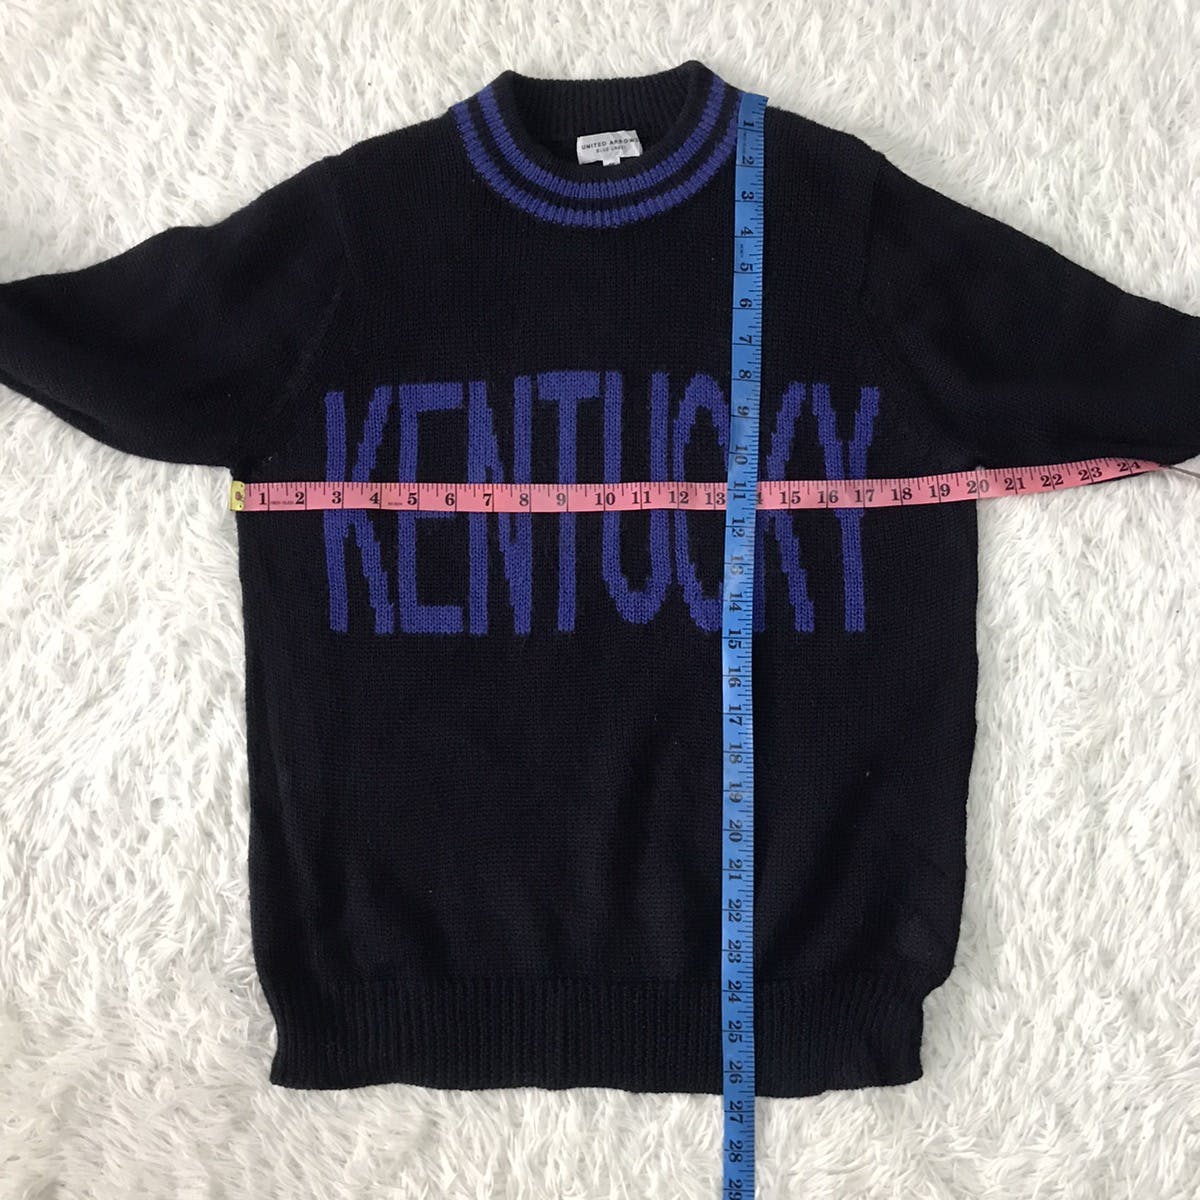 Big Word KENTUCKY Knit Sweater Jumper - 11